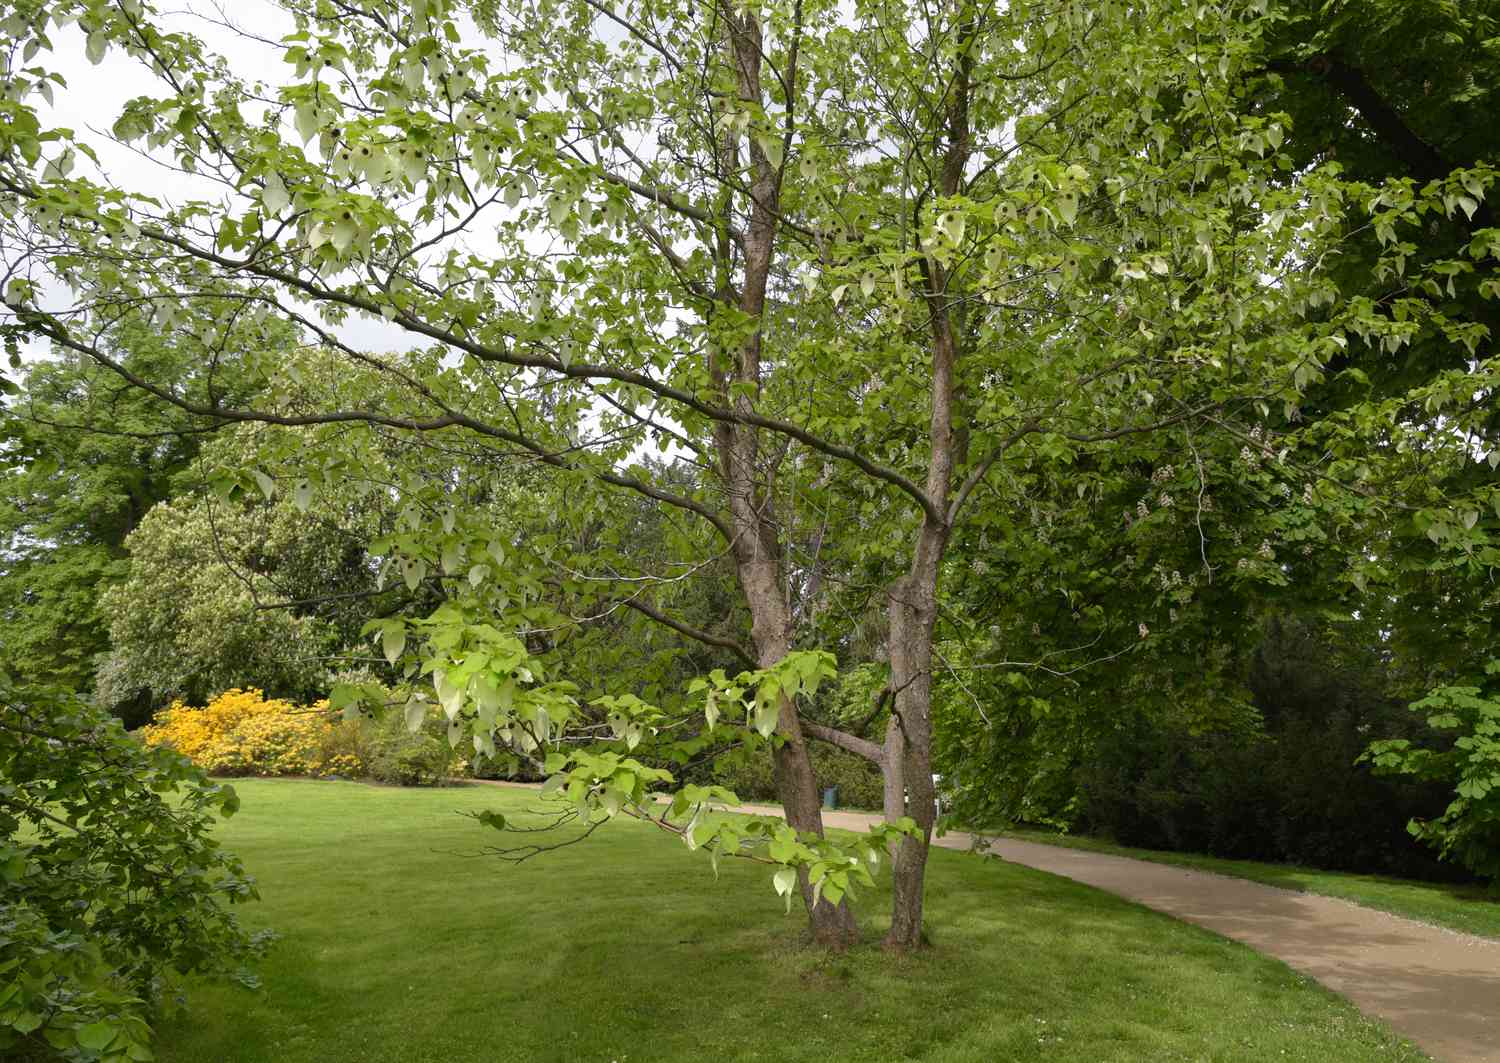 Taubenbäume am Wegesrand mit grünen herzförmigen Blättern und weißen Hochblättern